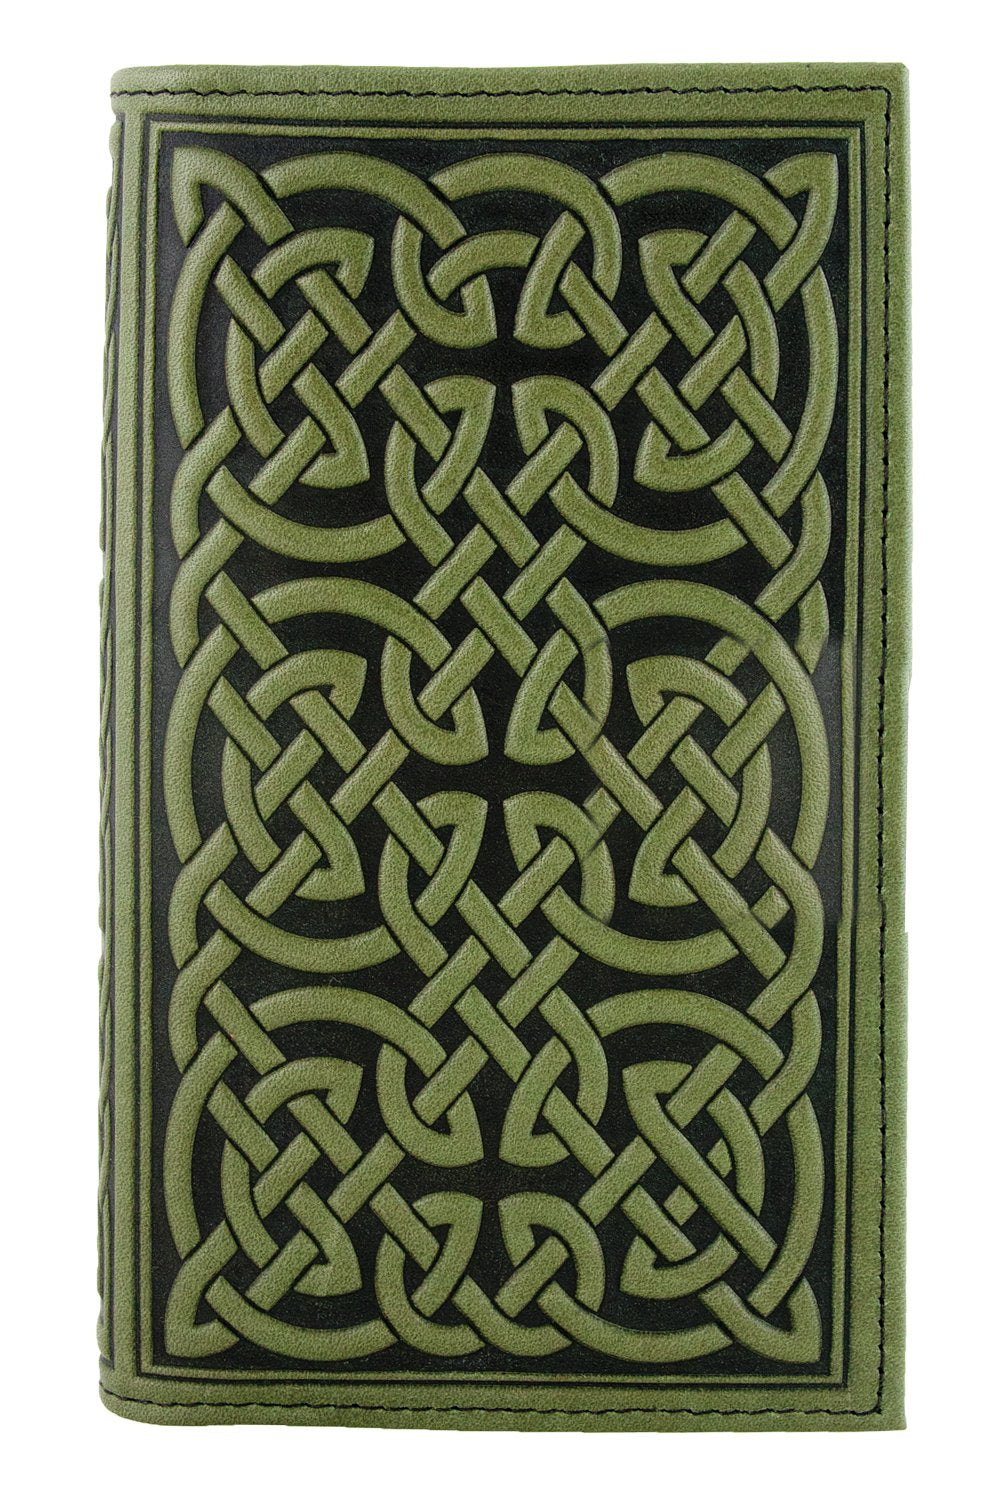 Large Leather Smartphone Wallet - Bold Celtic